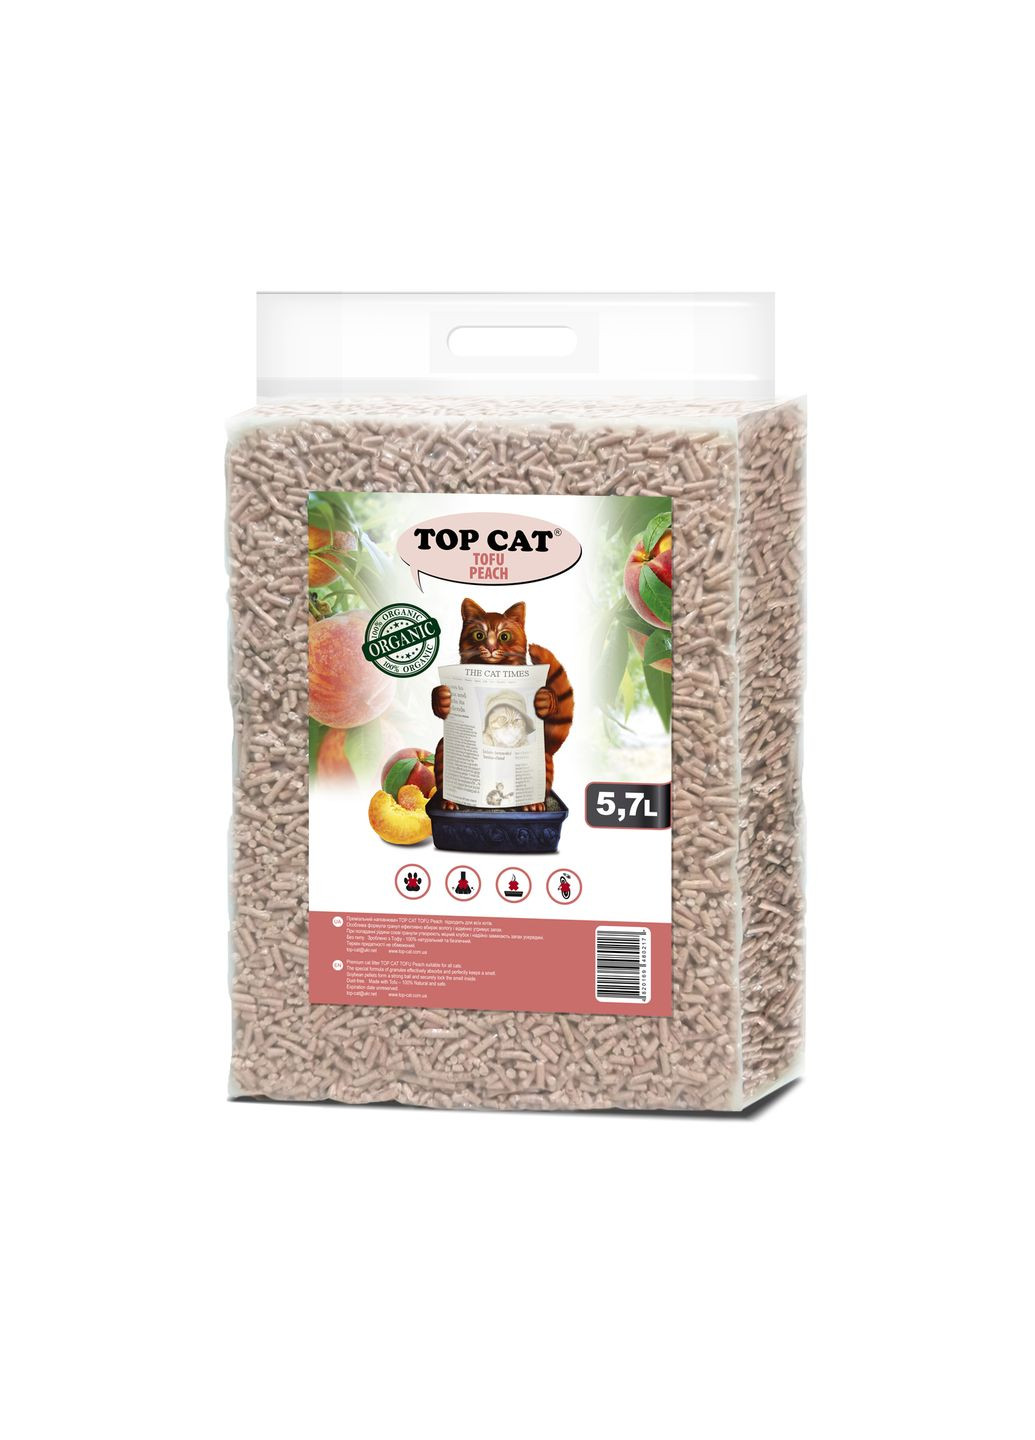 Наполнитель для кошачьего туалета Tofu Peach 480217 соевый с ароматом персика 5,7 л Top Cat (266274674)